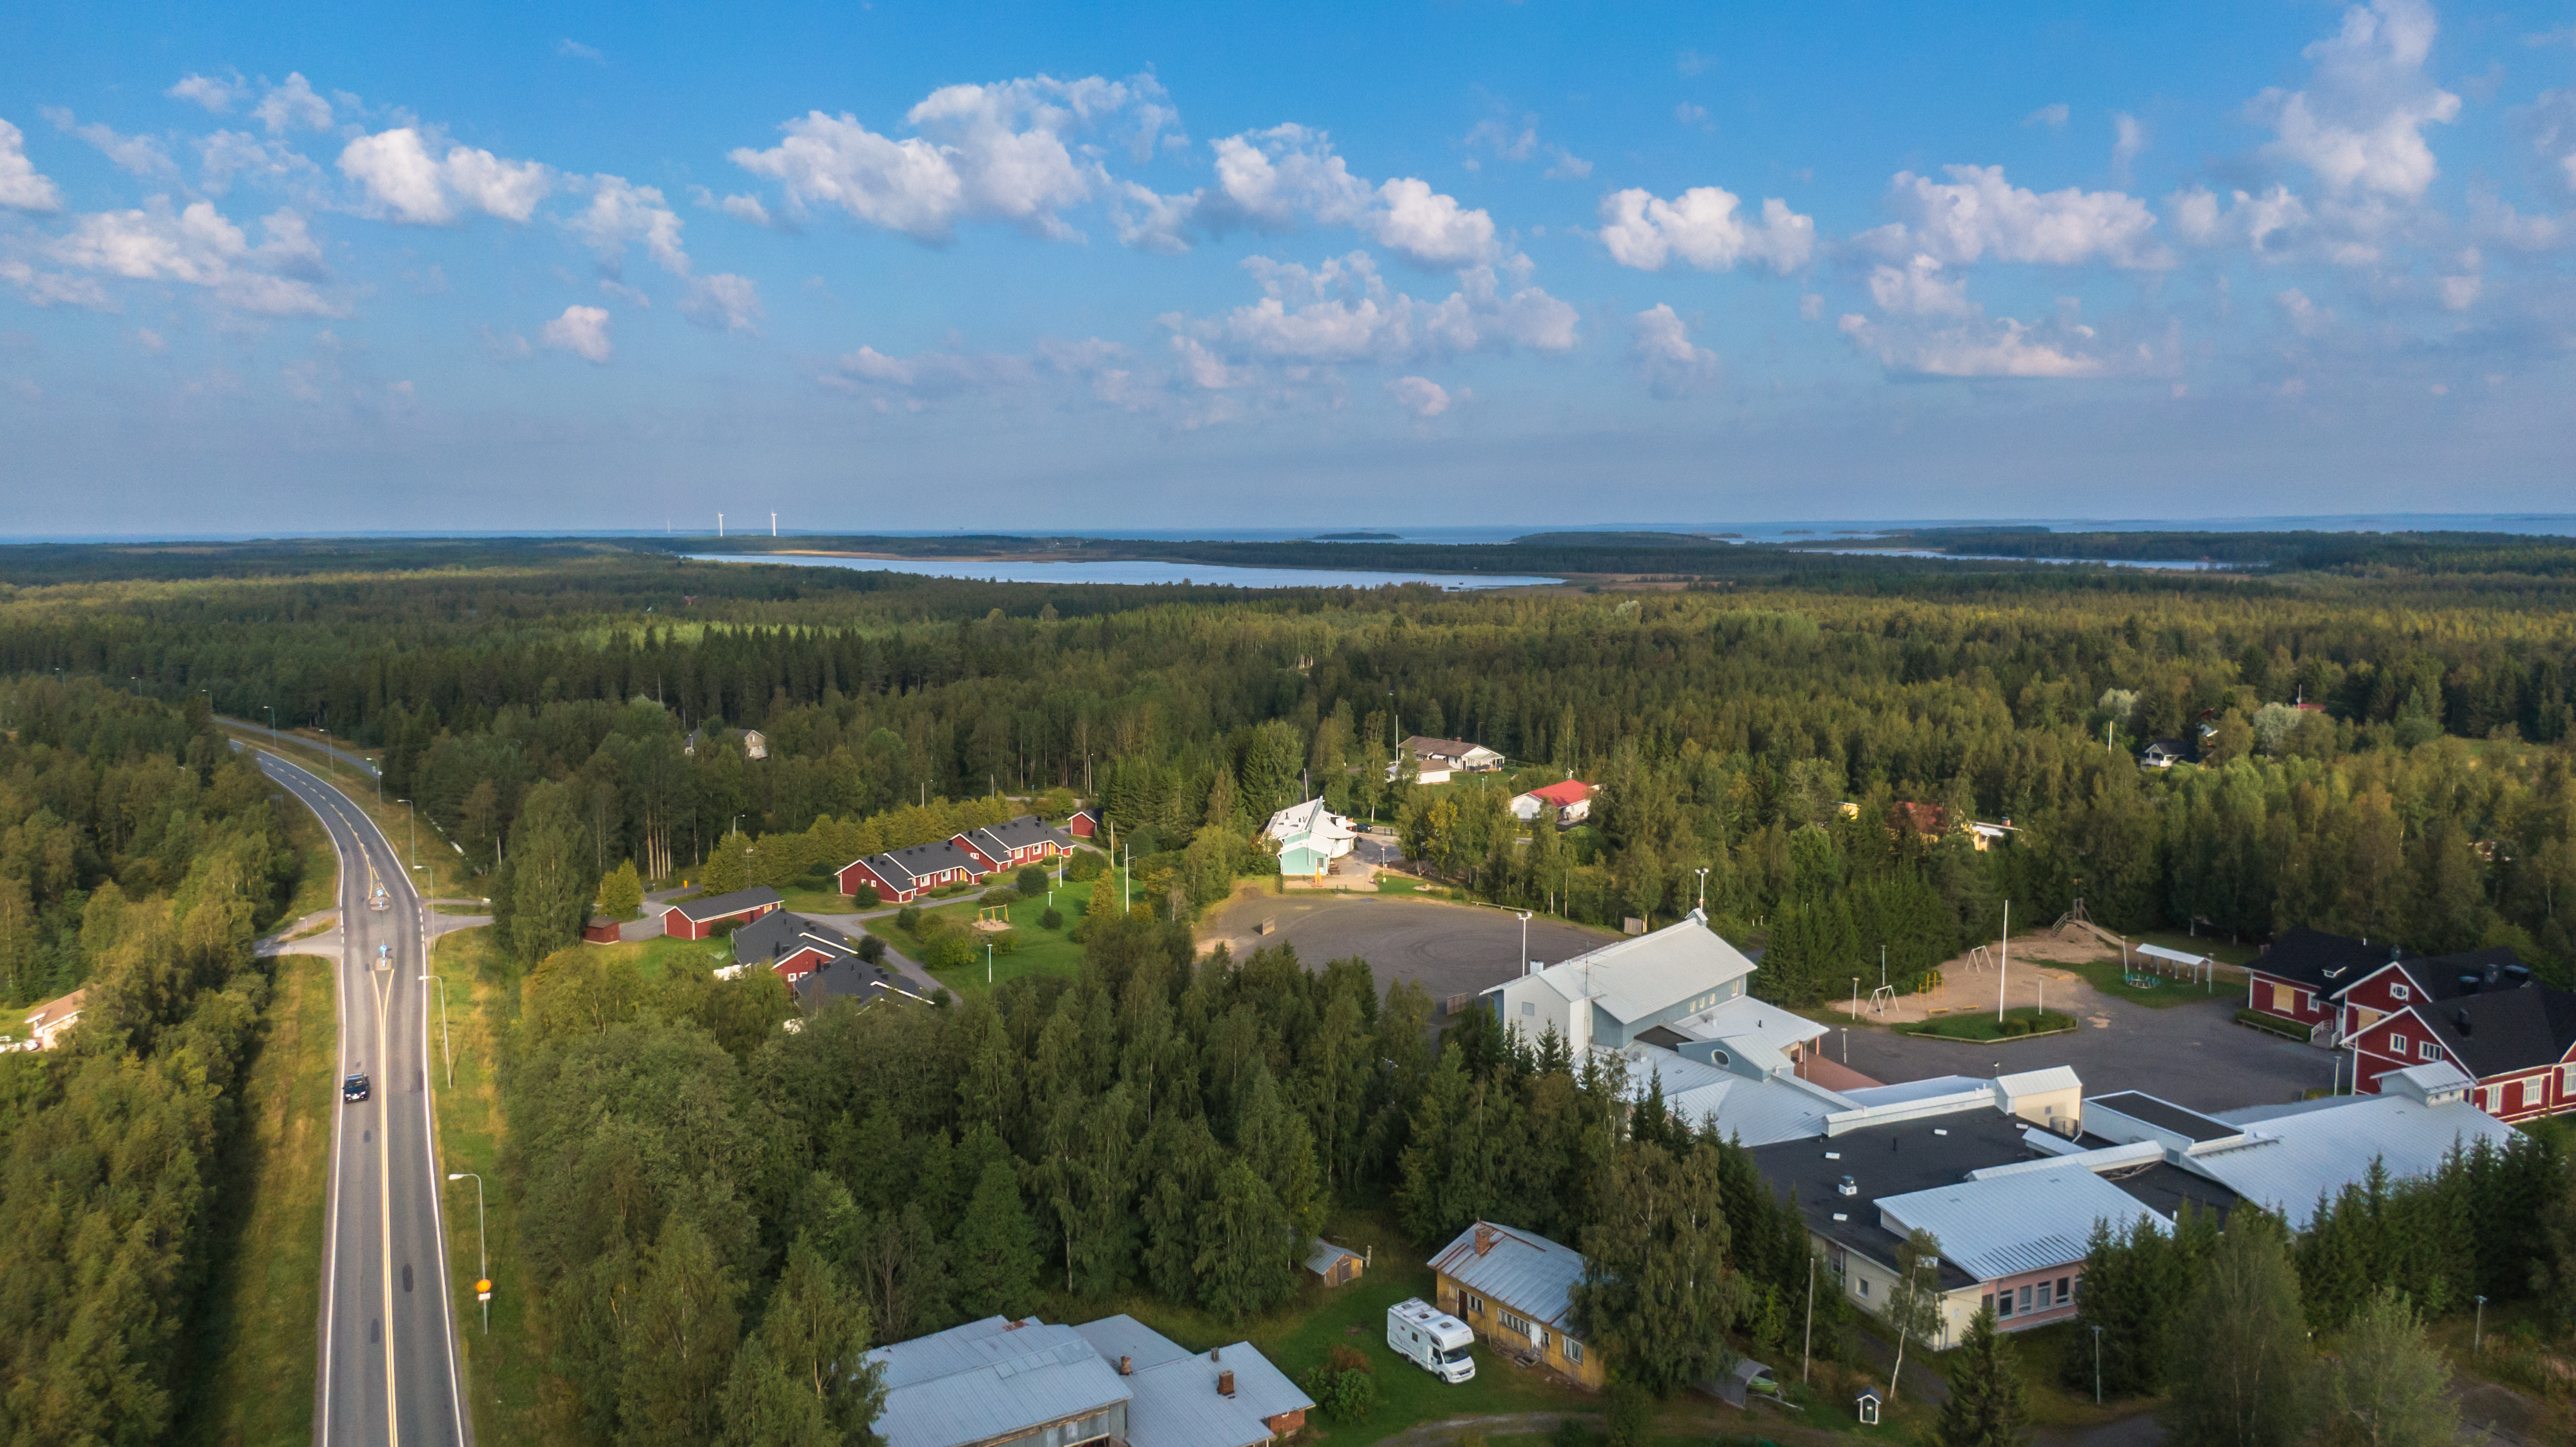 Dronen avulla otettu ilmakuva Oulunsalosta Salonpään kylämaisemasta. Sinisellä taivaalla valkoisia poutapilviä.